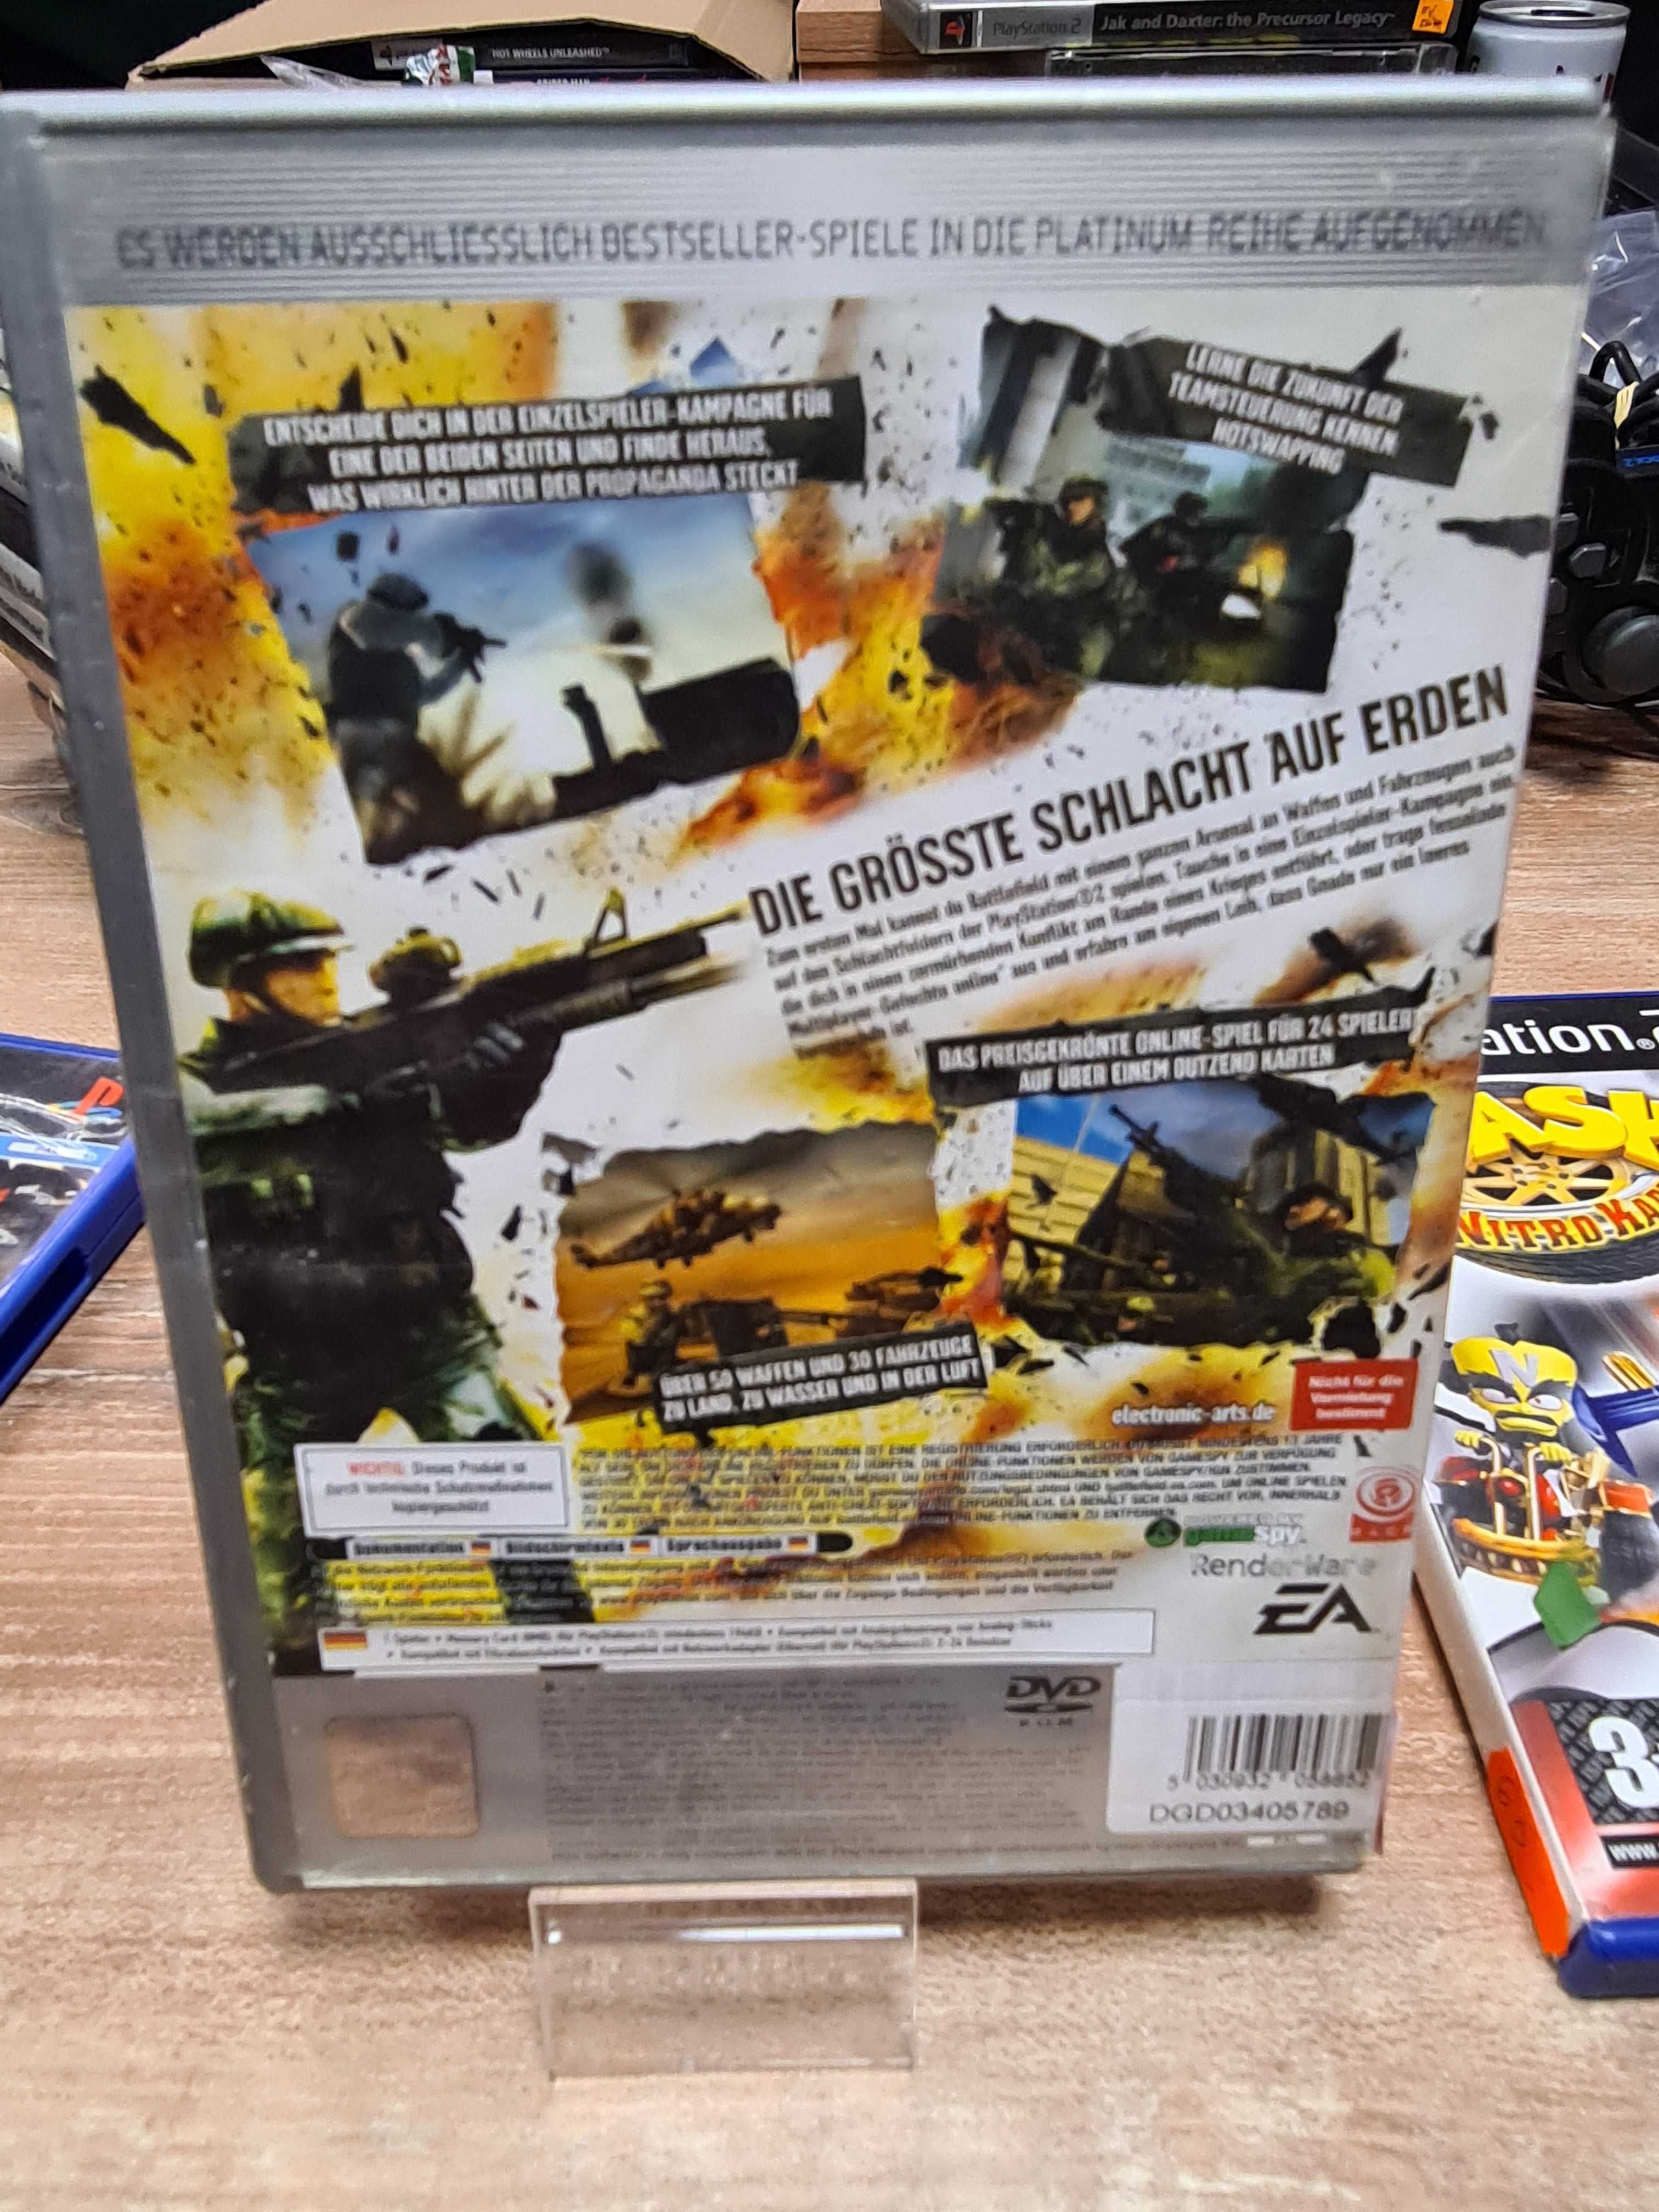 Battlefield 2: Modern Combat PS2, Sklep Wysyłka Wymiana